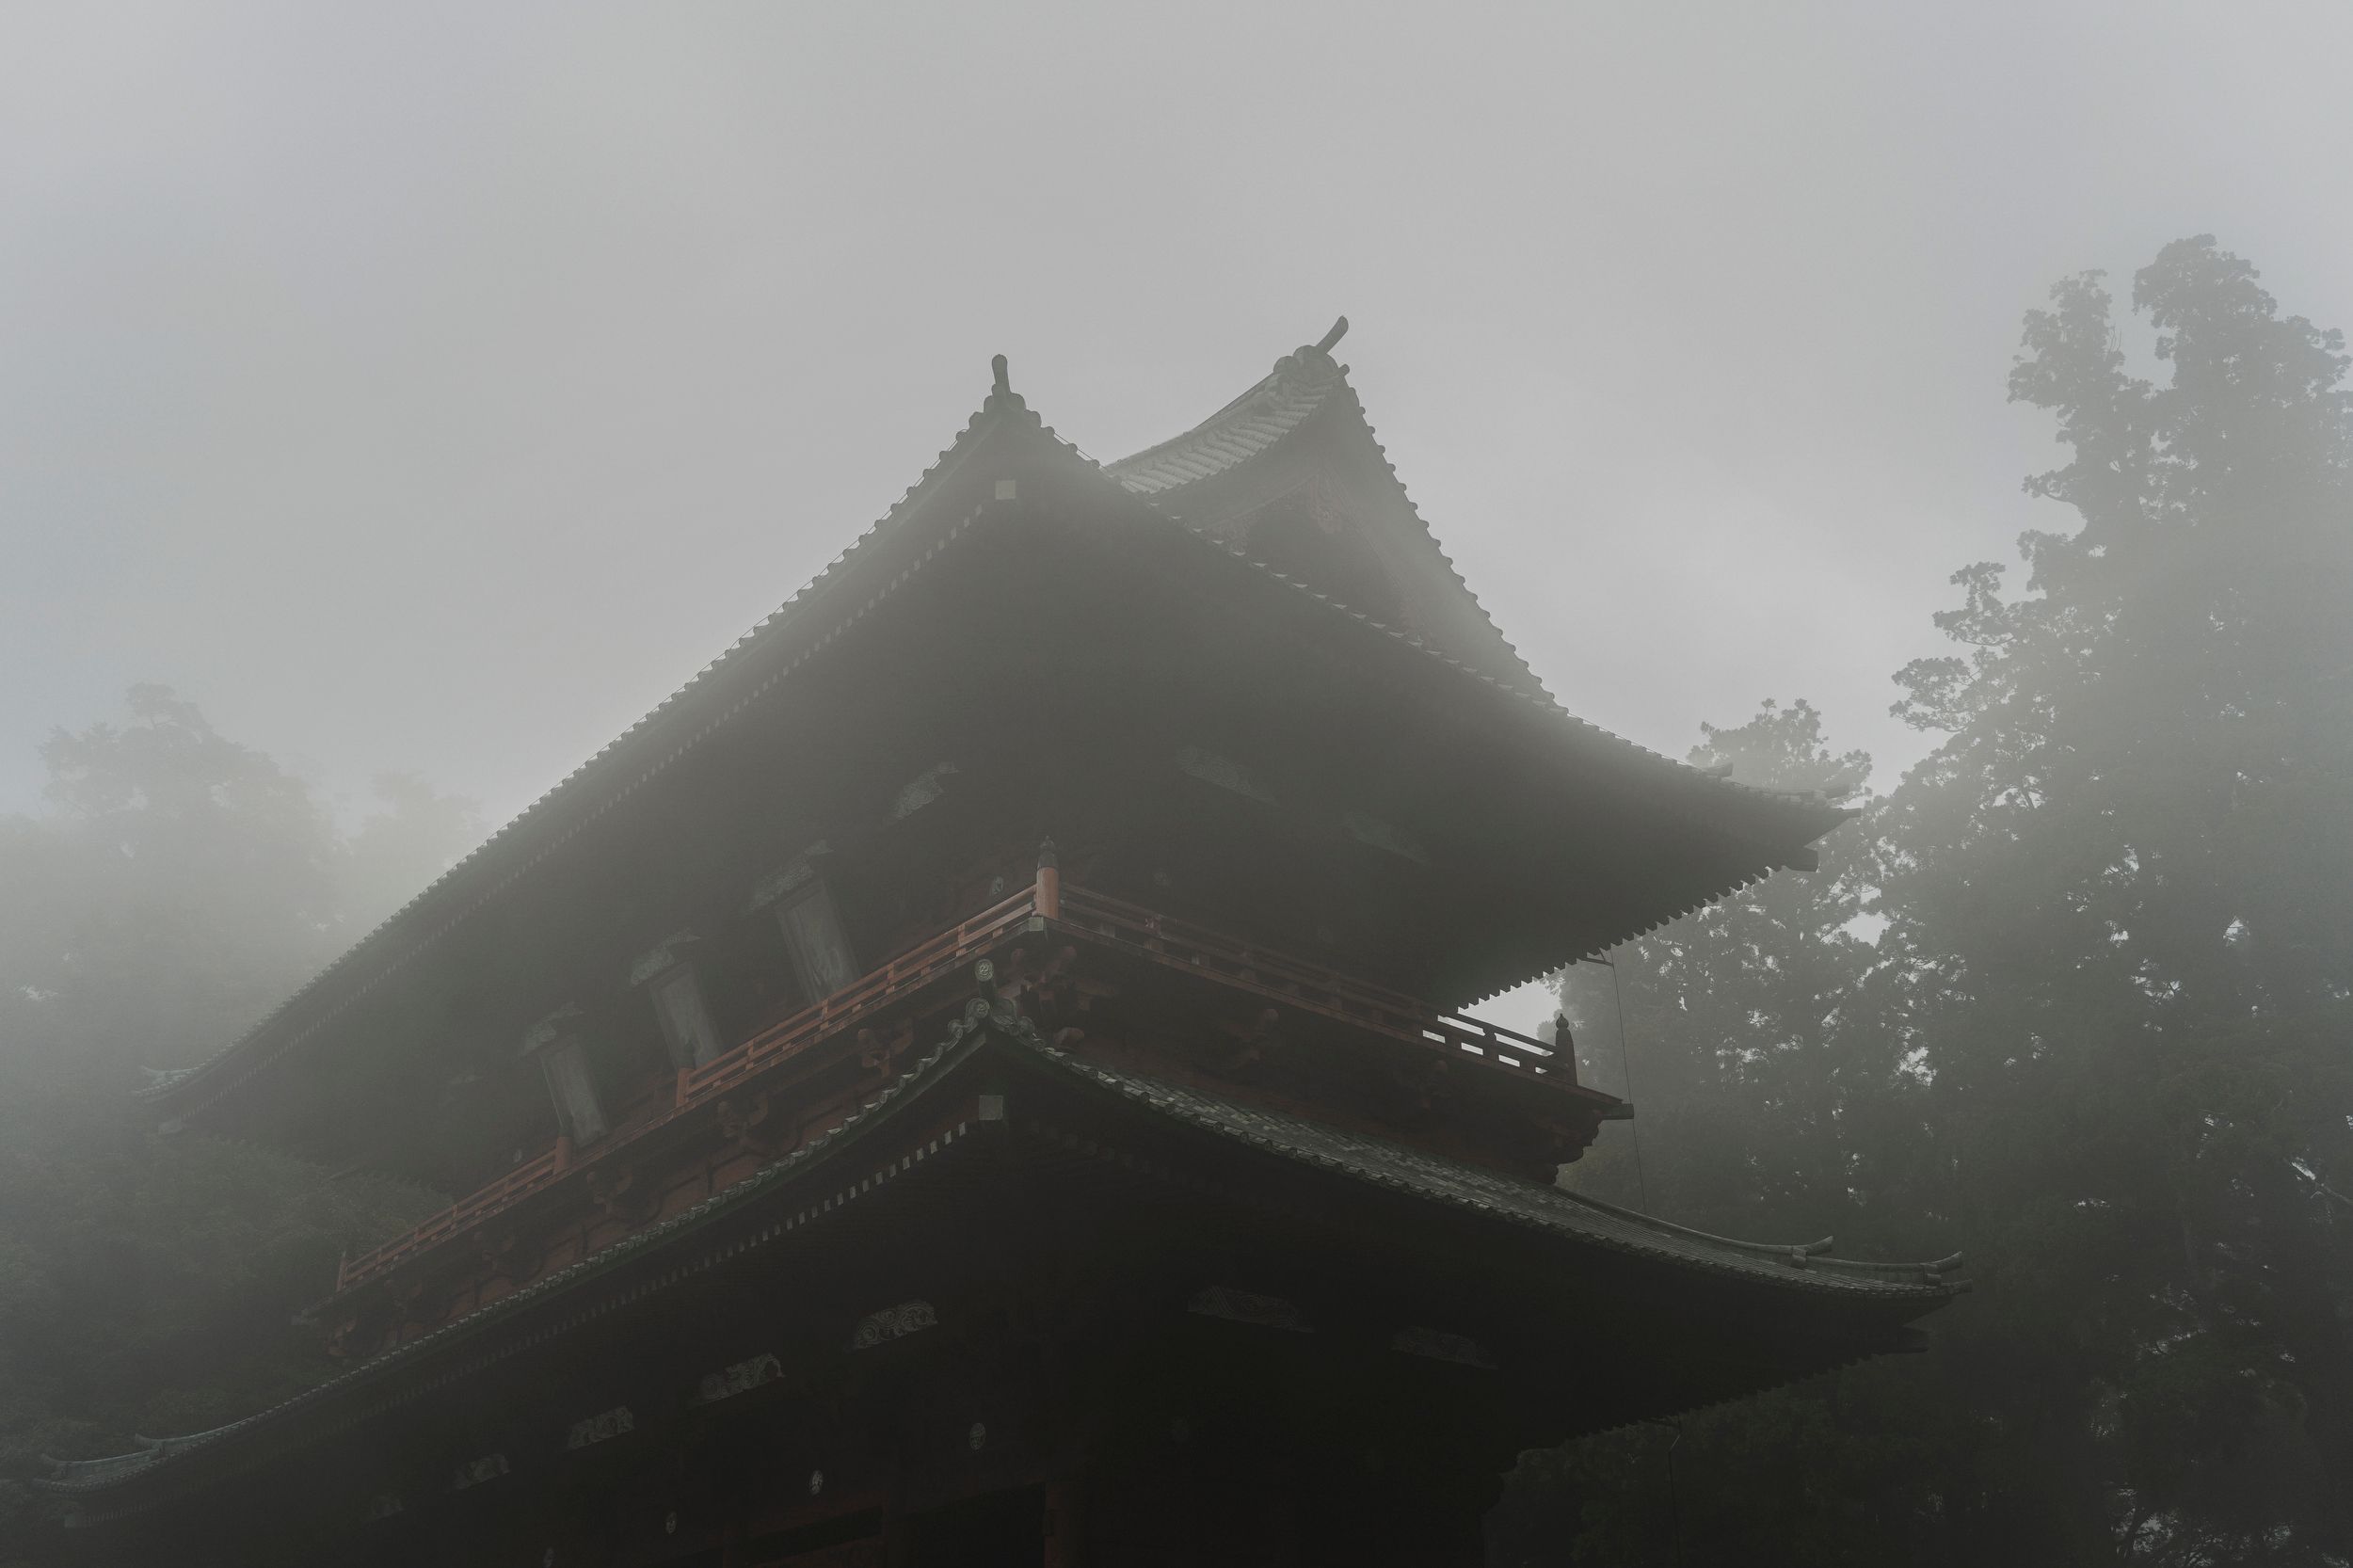 La denominada Daimon Gate es la puerta de acceso principal al monte Koya (Kōyasan), centro neurálgico del budismo shingon que fue fundado en el año 816 por el monje y Gran Maestro Kōbō- Daishi. Situada en la cordillera norte de la prefectura de Wakayama y reconstruida en el año 1705, durante el Período Edo, Daimon alcanza hasta los 25,1 metros de altura.